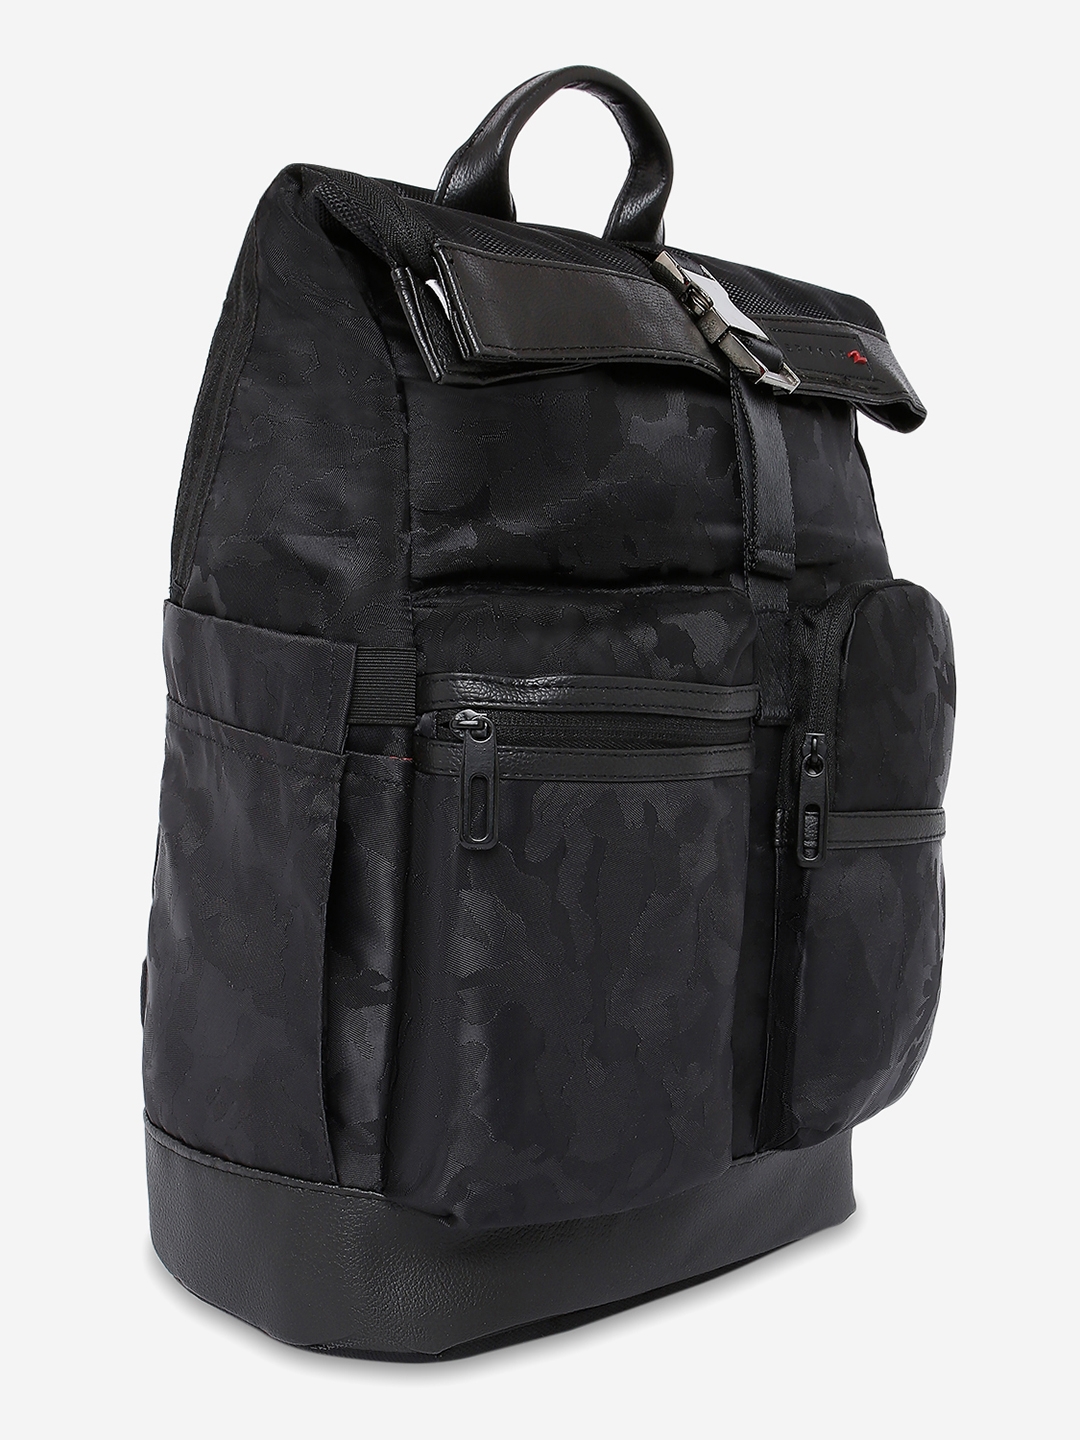 Oxford Travel Backpack Purse Shoulder Bag – Roisse